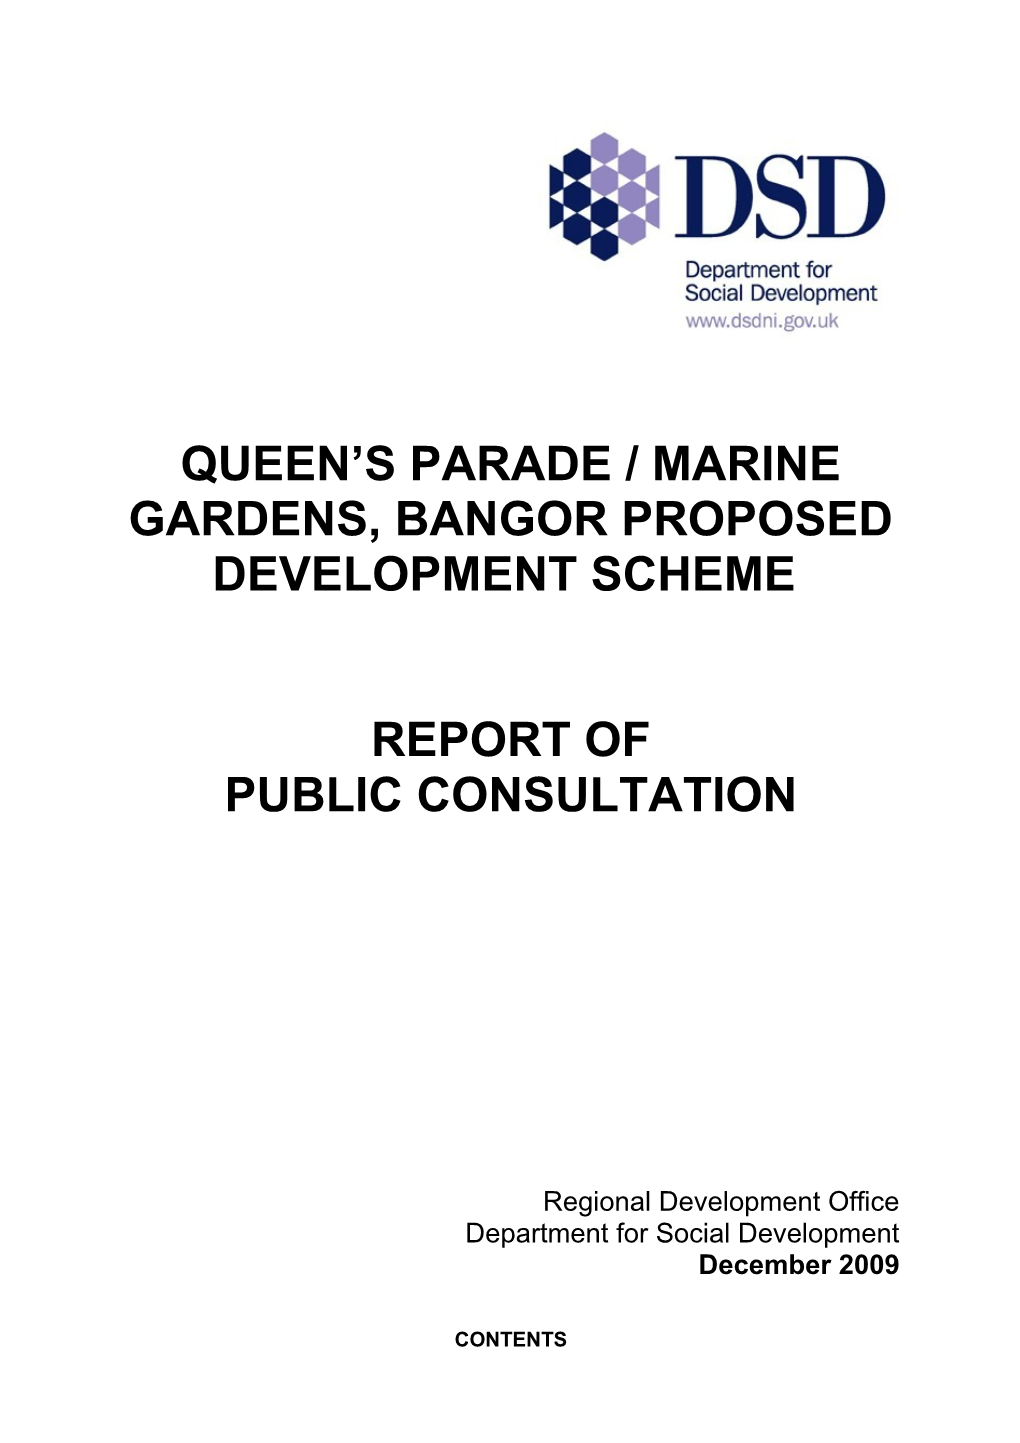 Queen's Parade / Marine Gardens, Bangor Proposed Development Scheme